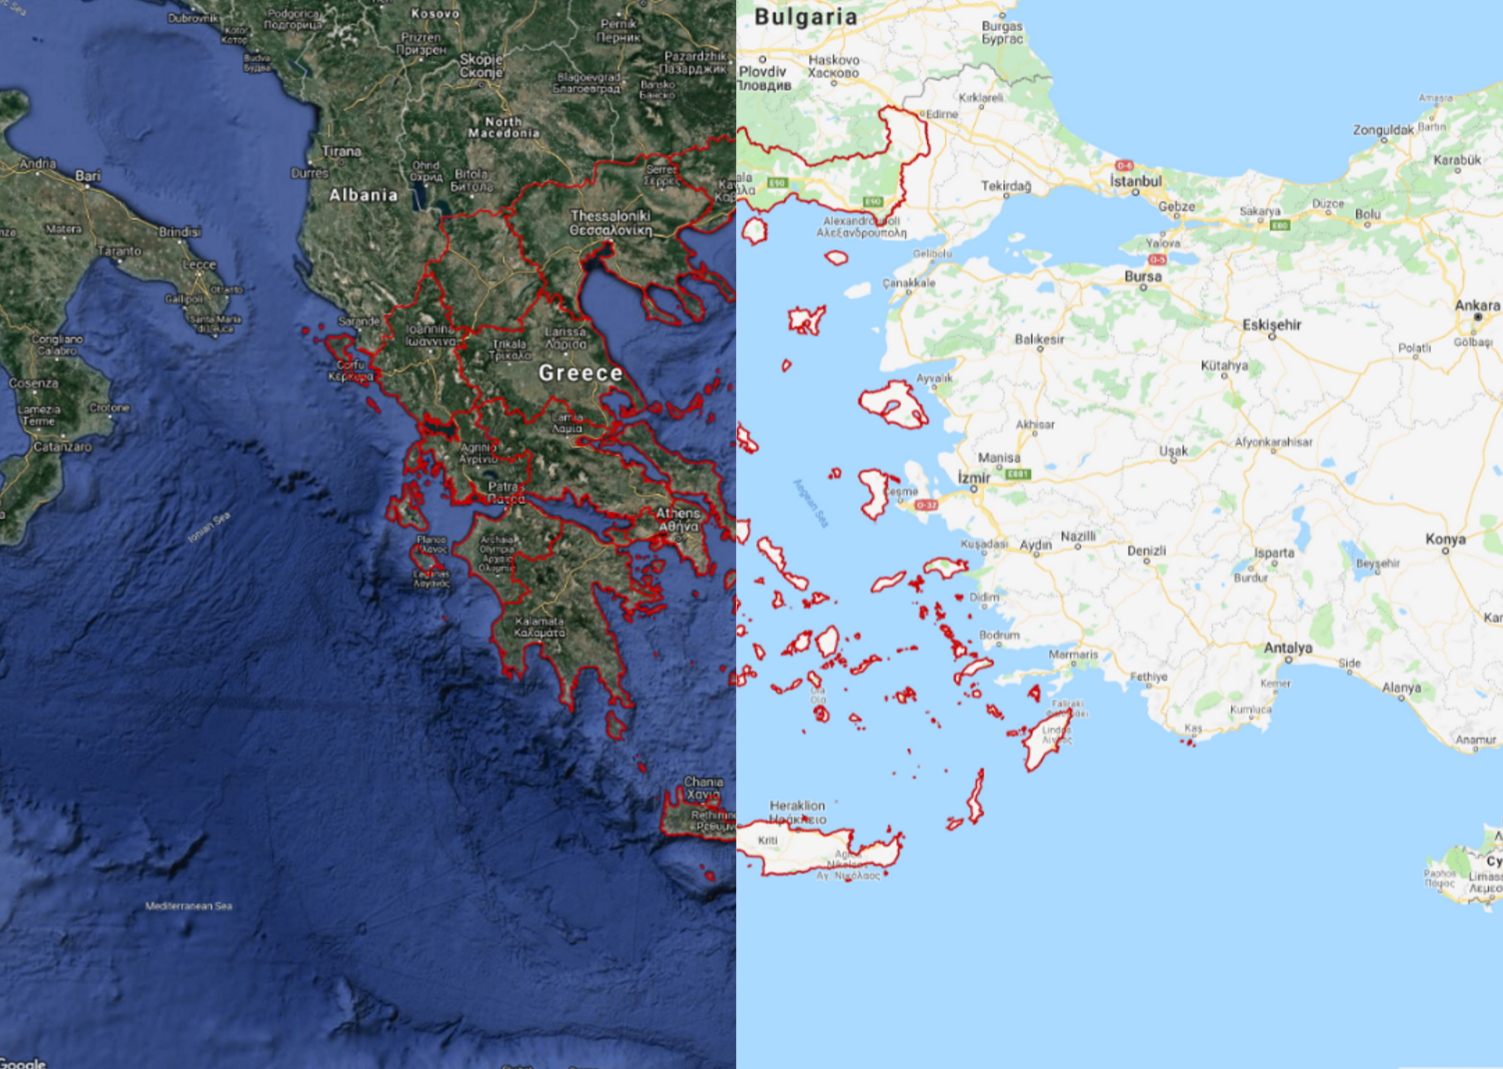 The Greek Region Boundaries